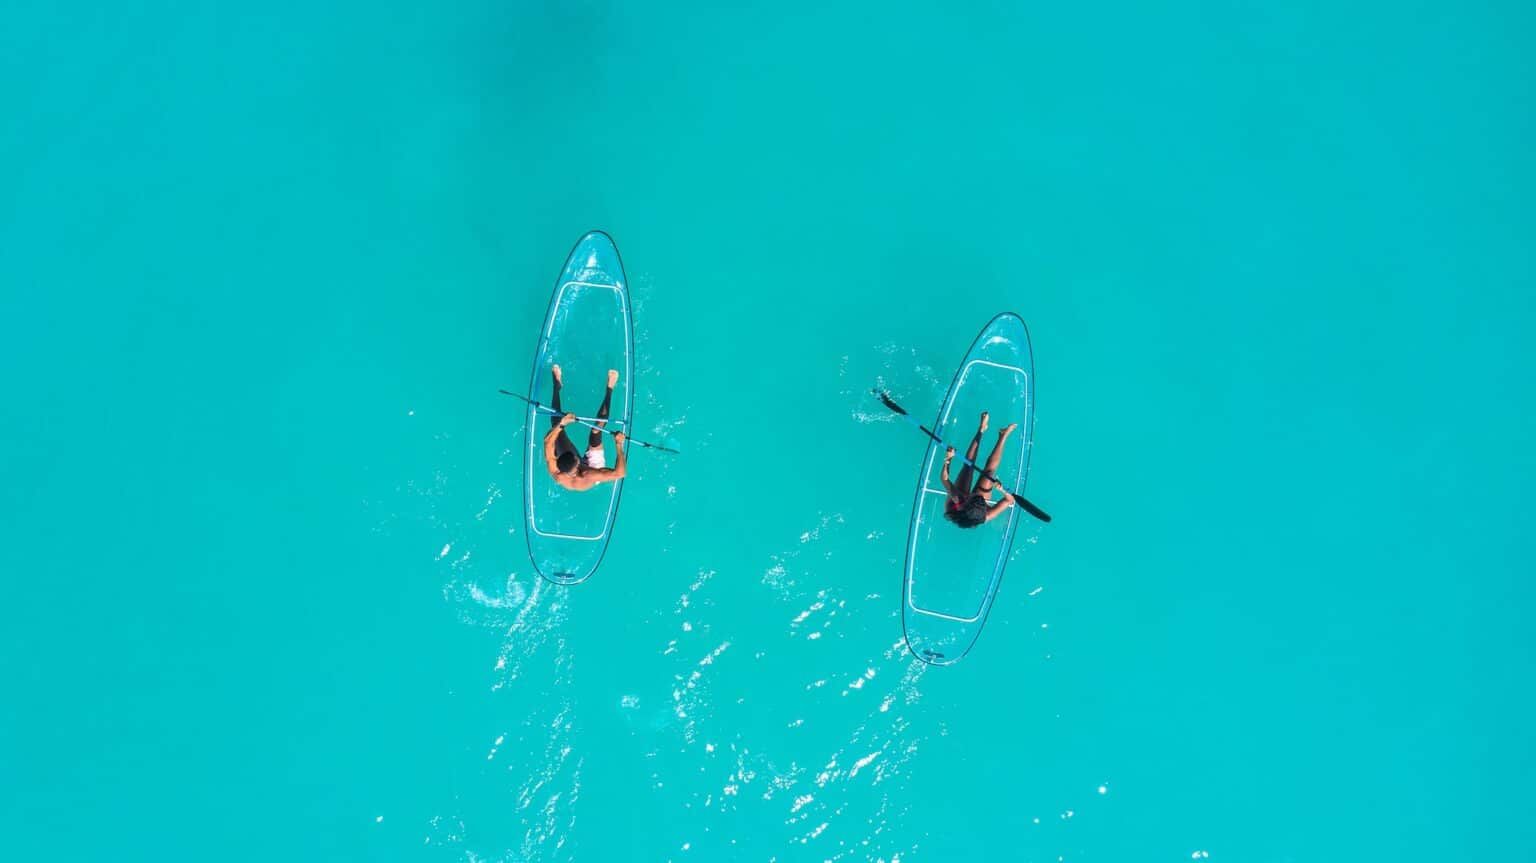 2 people kayaking in transparant kayak clear water